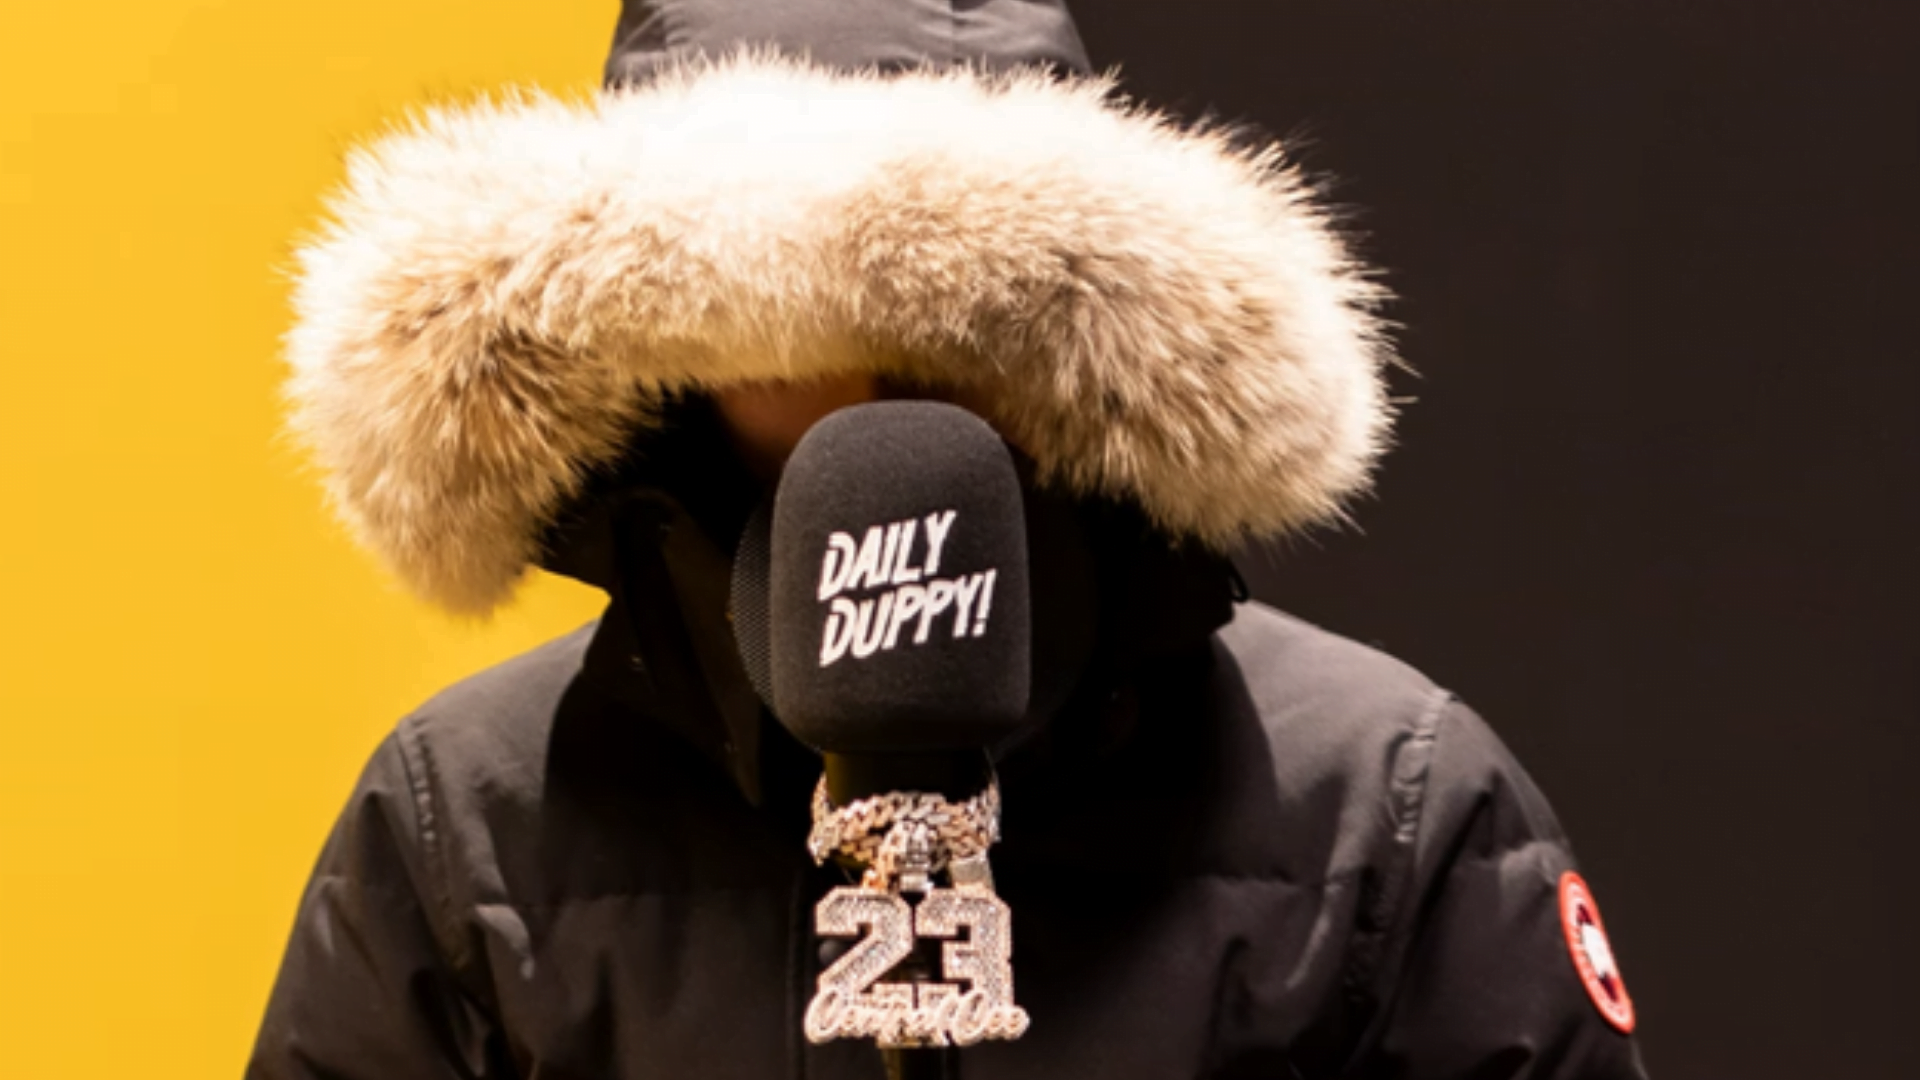 Le rappeur britannique Central Cee présente son premier freestyle "Daily Duppy".